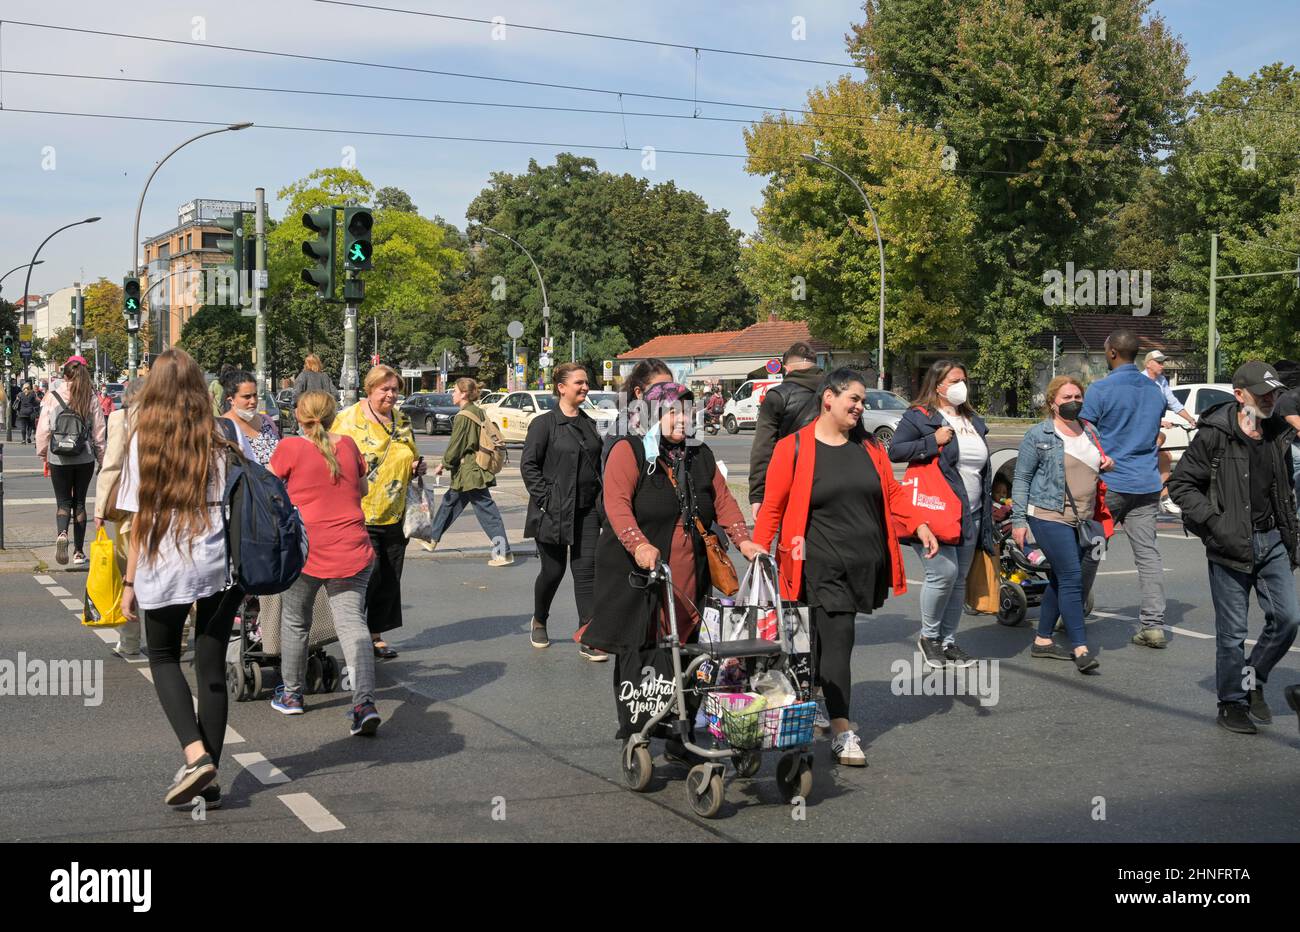 Street scene pedestrian crossing, traffic light, Muellerstrasse, Seestrasse, Wedding, Mitte, Berlin, Germany Stock Photo